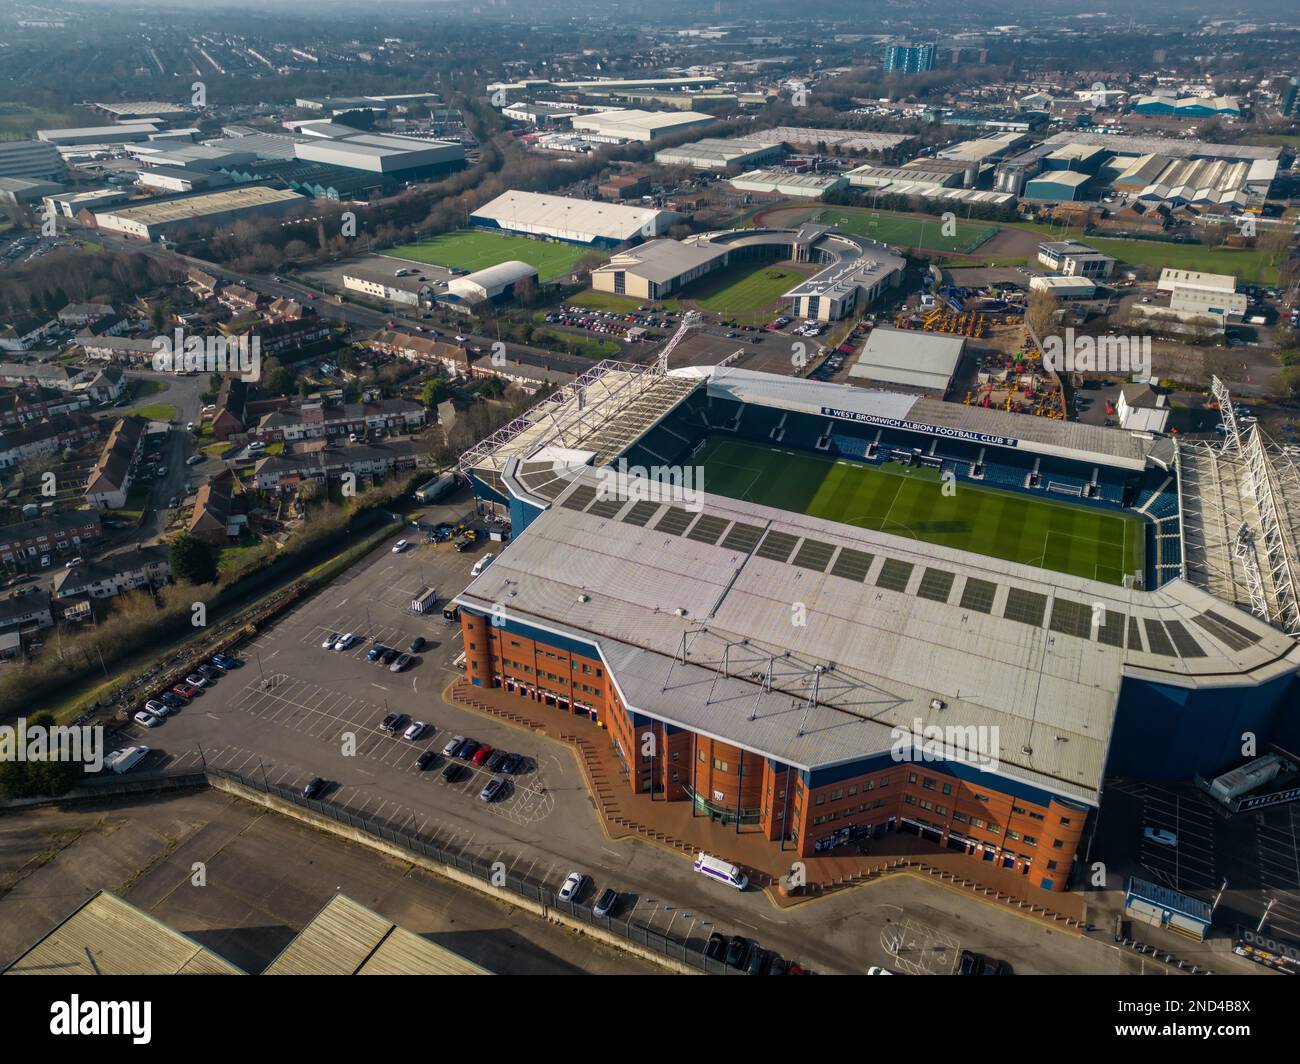 Le stade du club de football de West Brom, le Hawthorns Aerial Drone Birds Eye View Banque D'Images